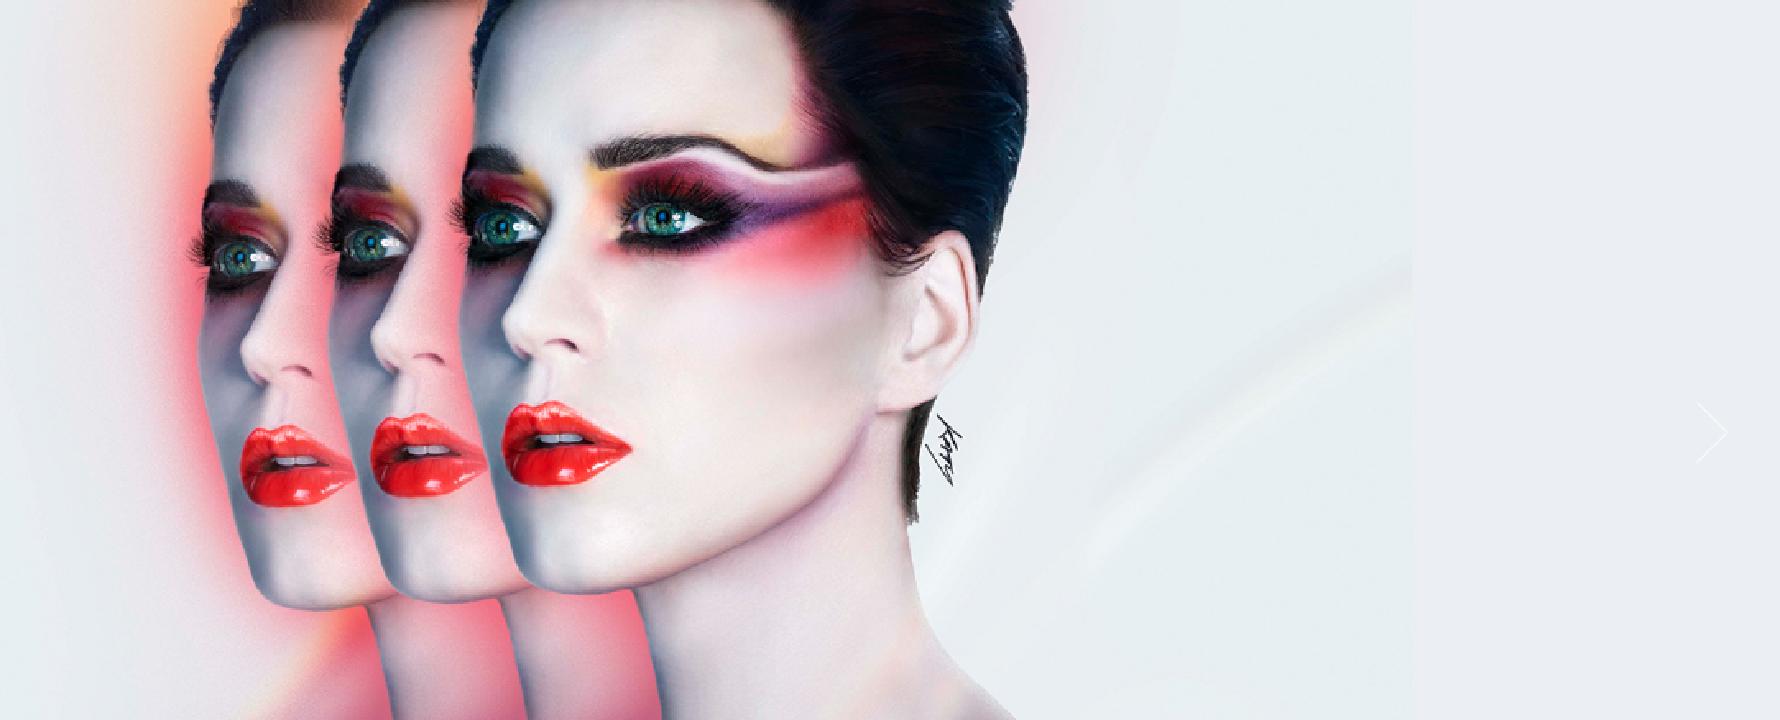 Fotografia promozionale di Katy Perry.